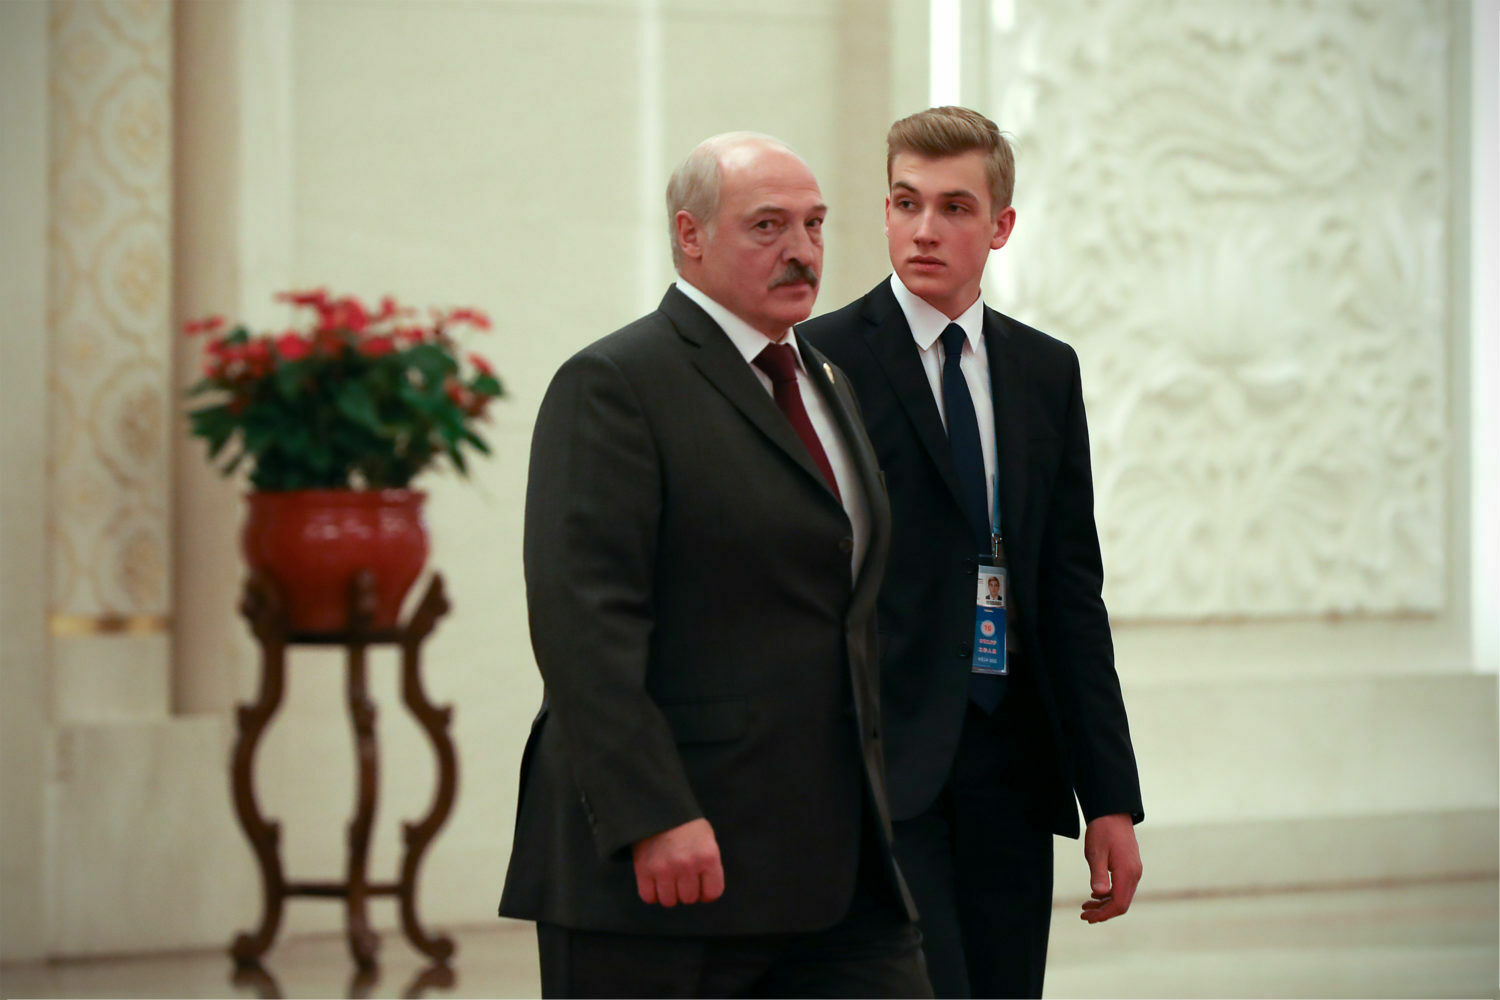 Коля Лукашенко достиг возраста судебной ответственности. Что дальше?